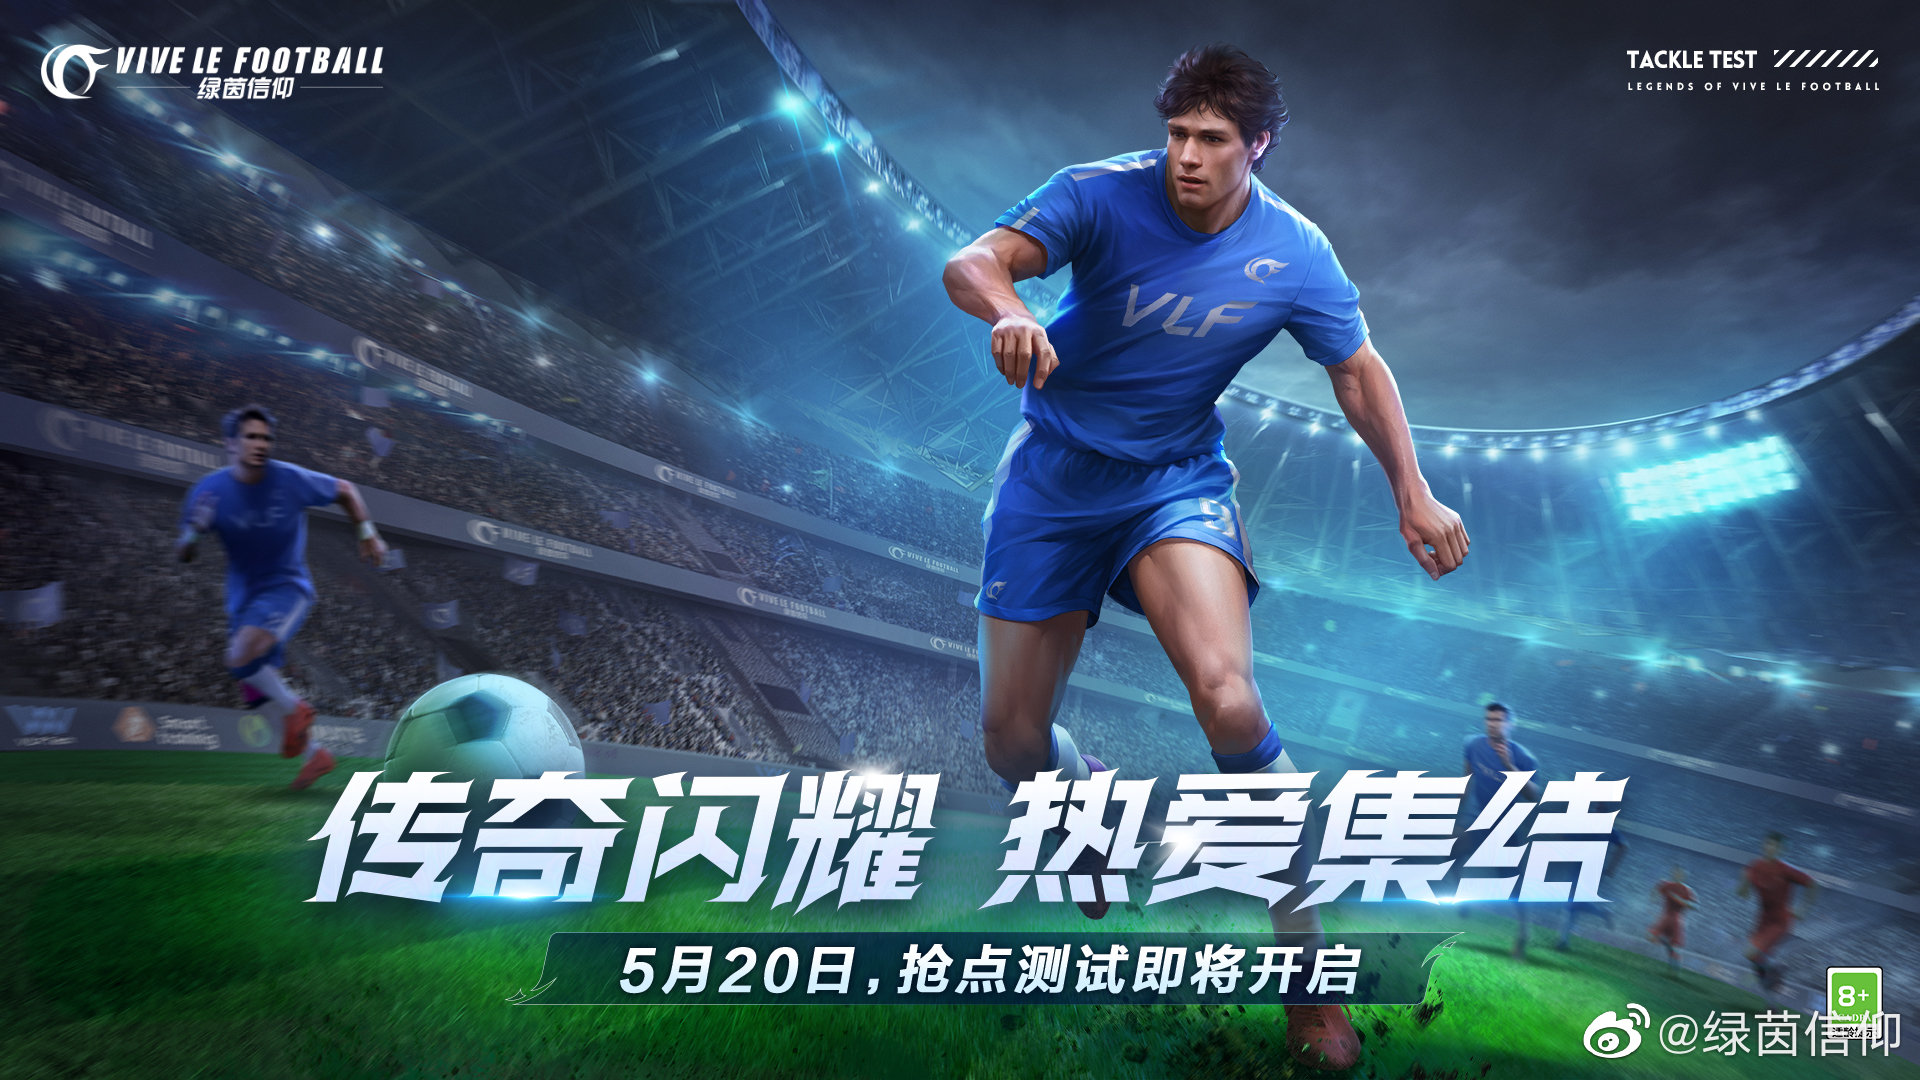 Vive le football NetEase